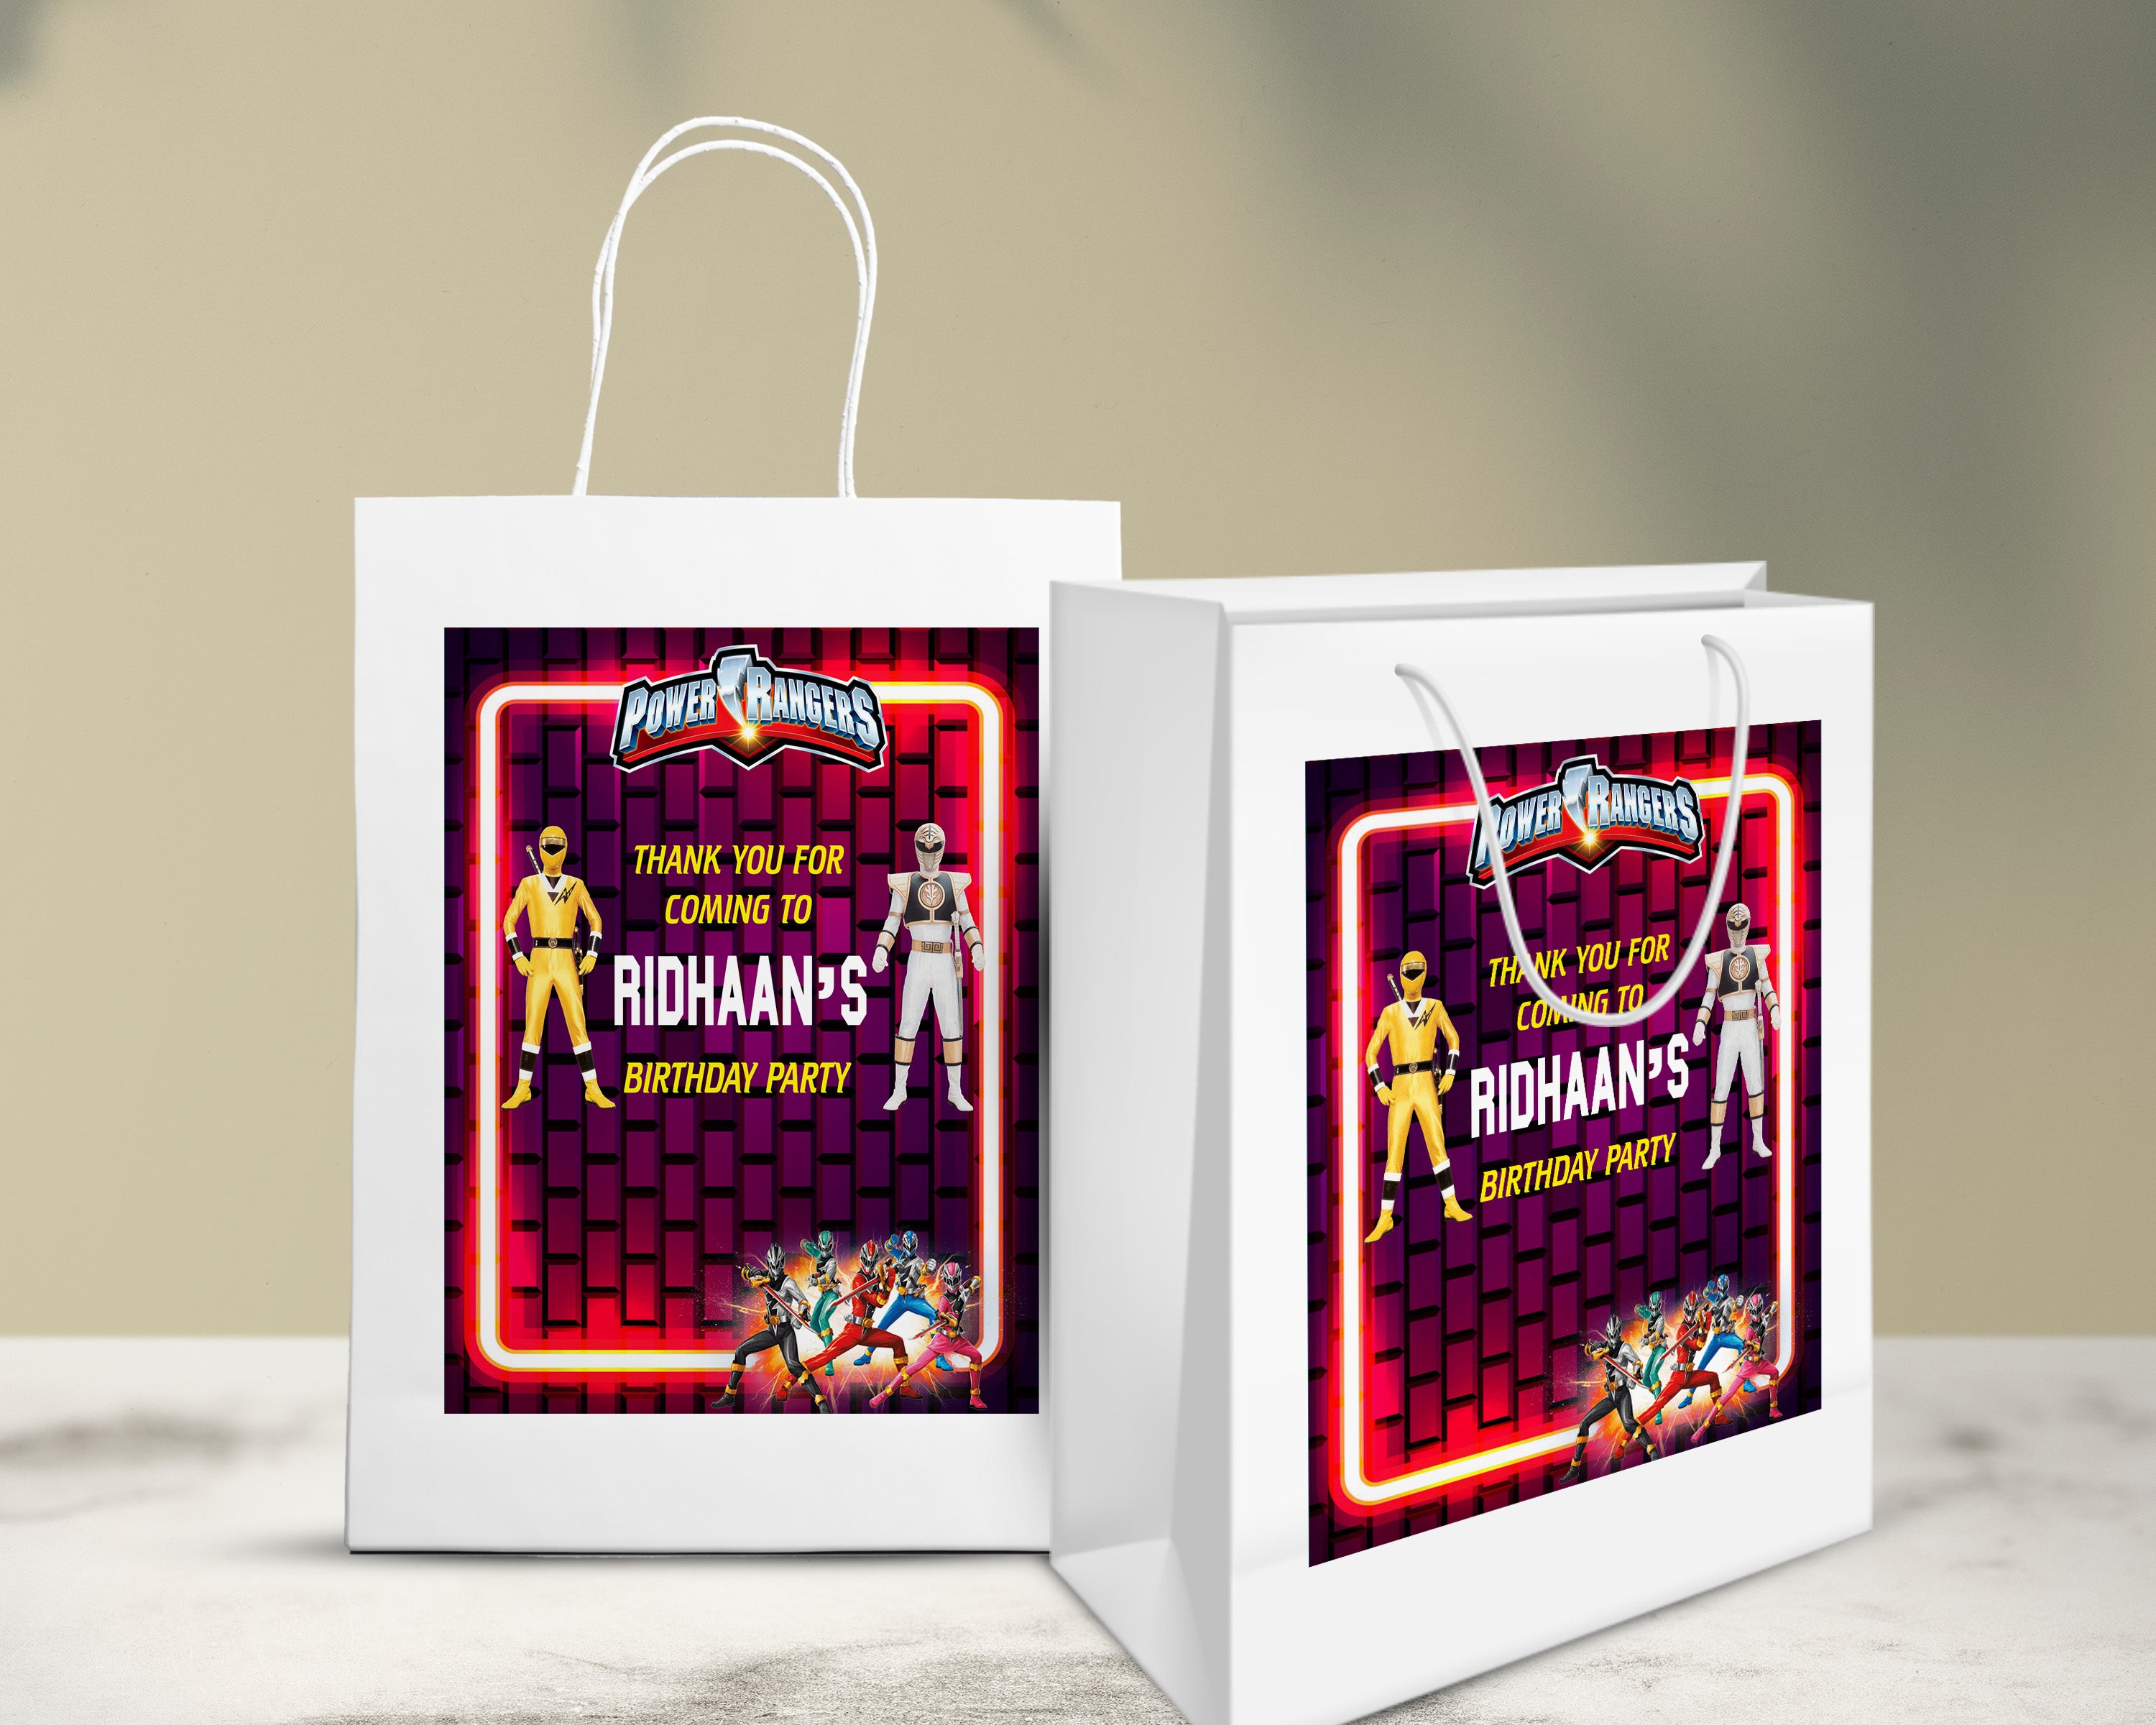 PSI Power Rangers Theme Oversized Return Gift Bag